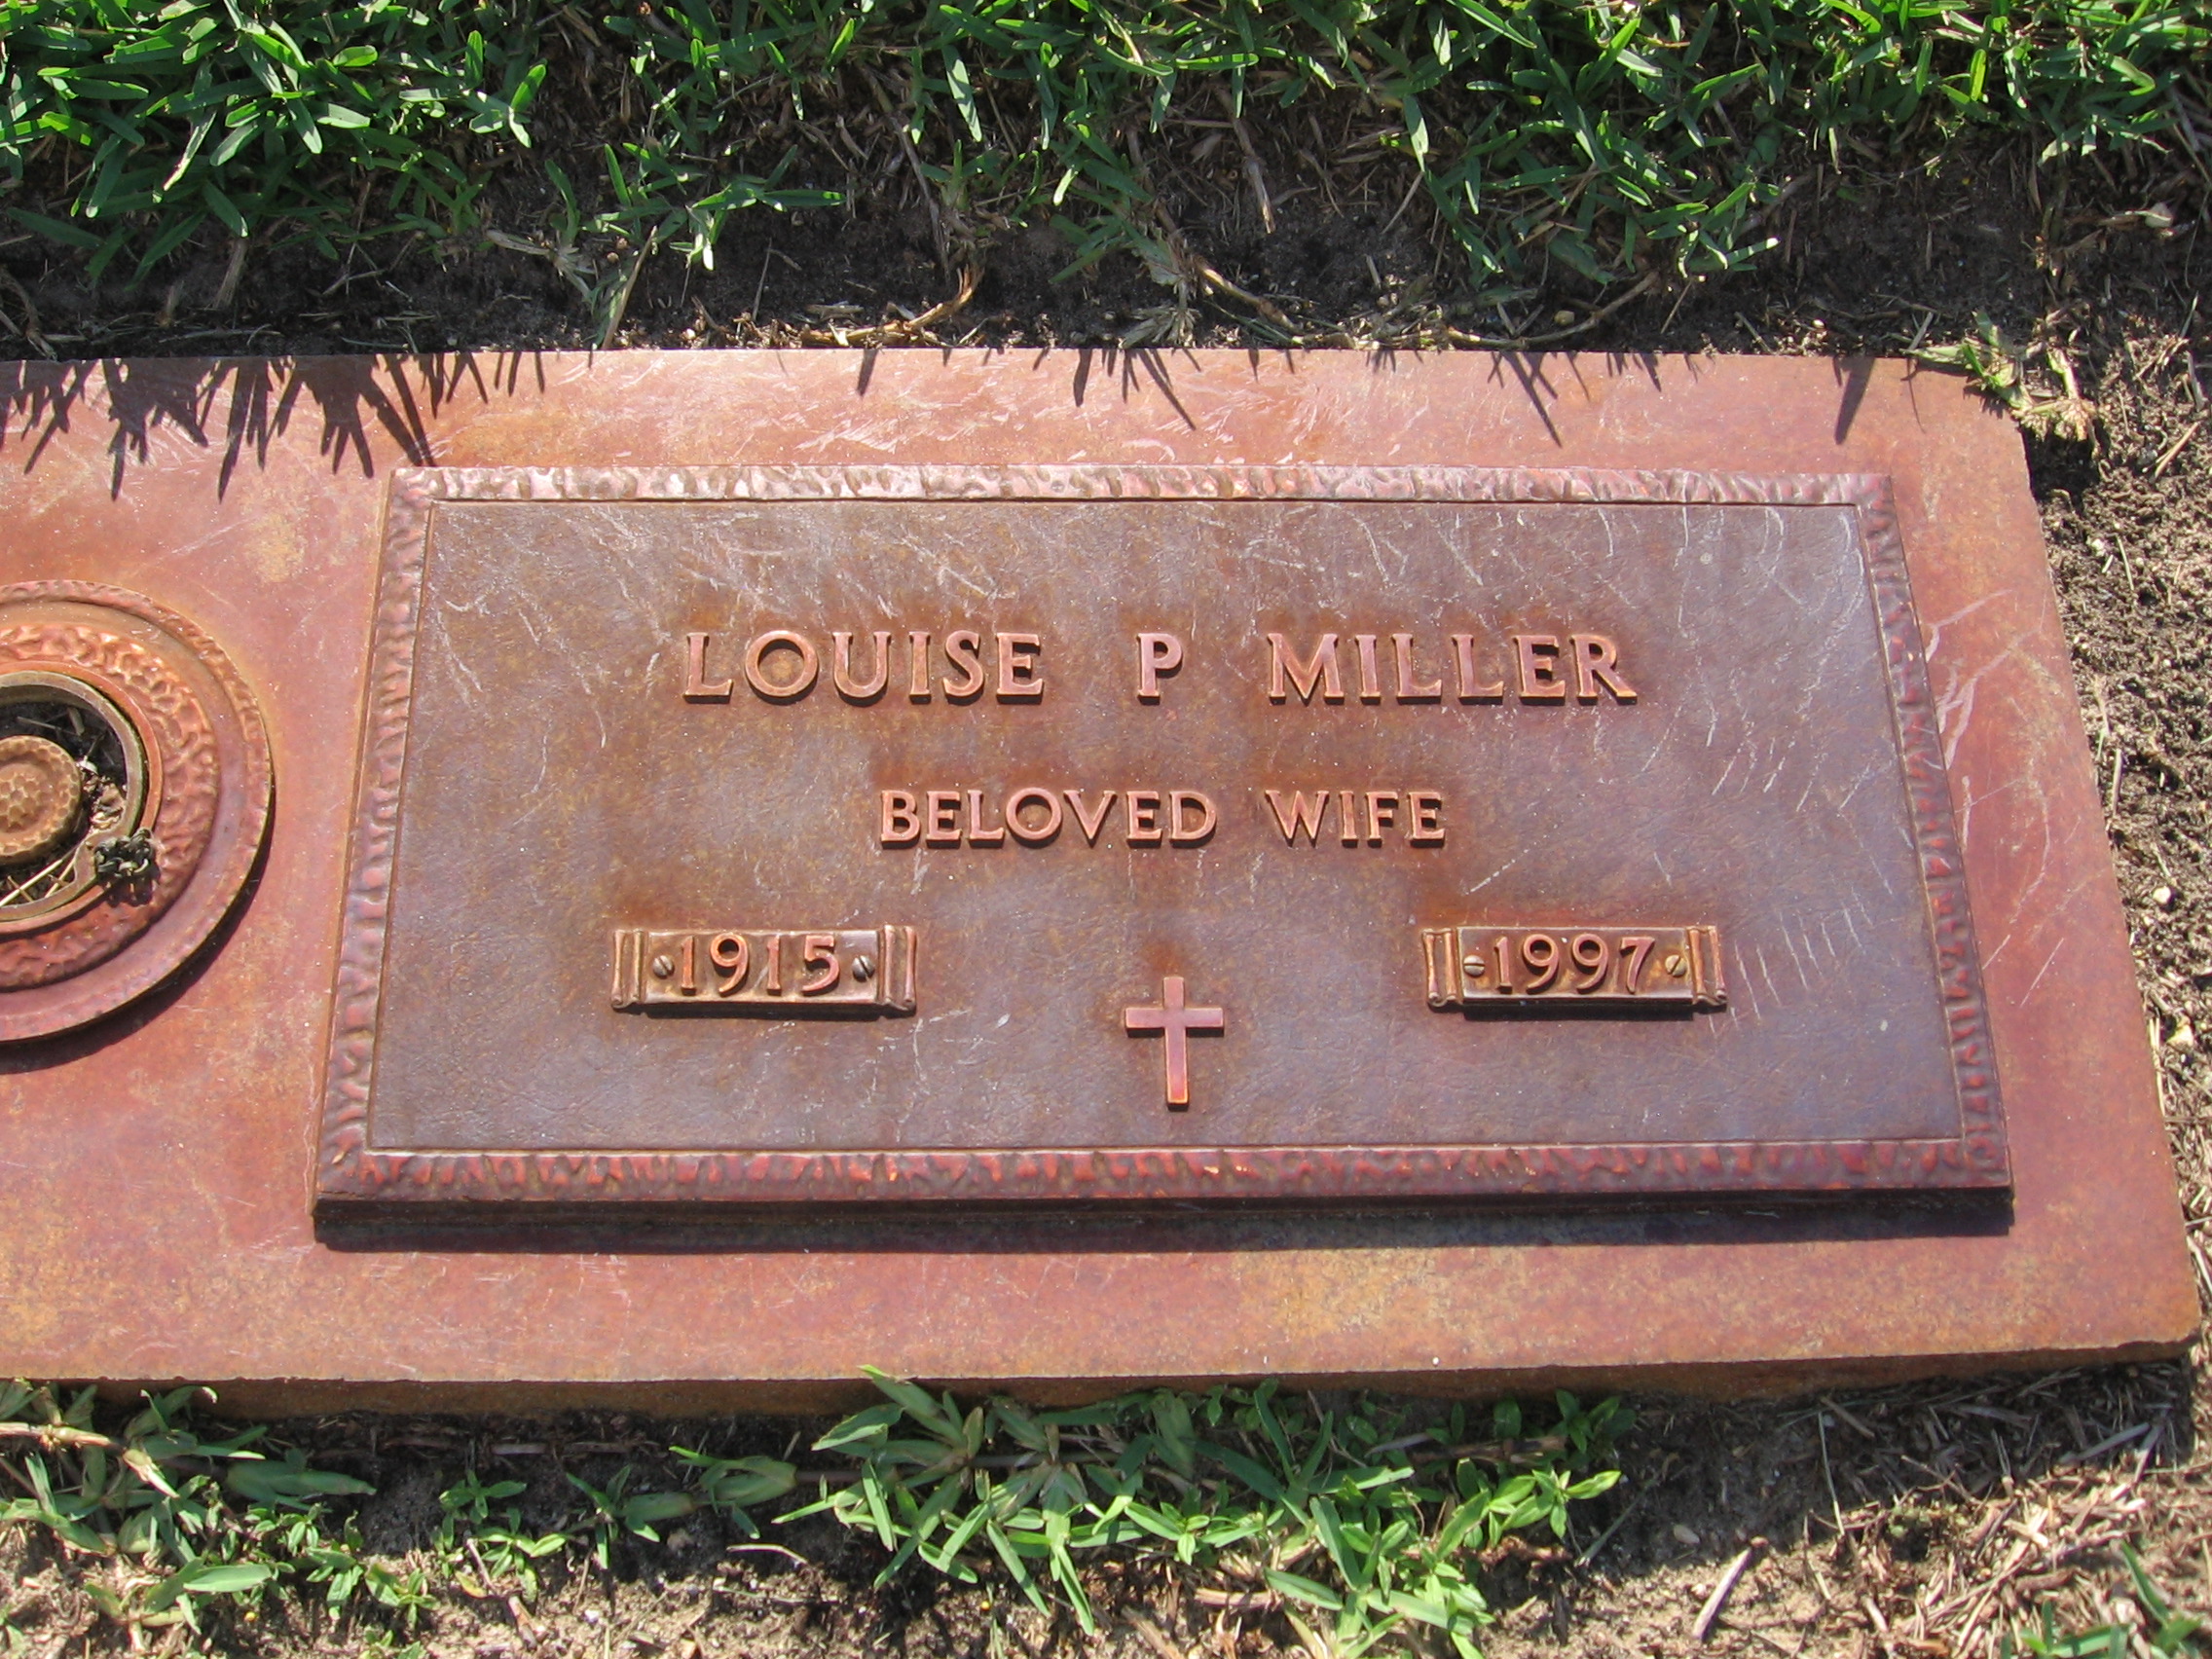 Louise P Miller